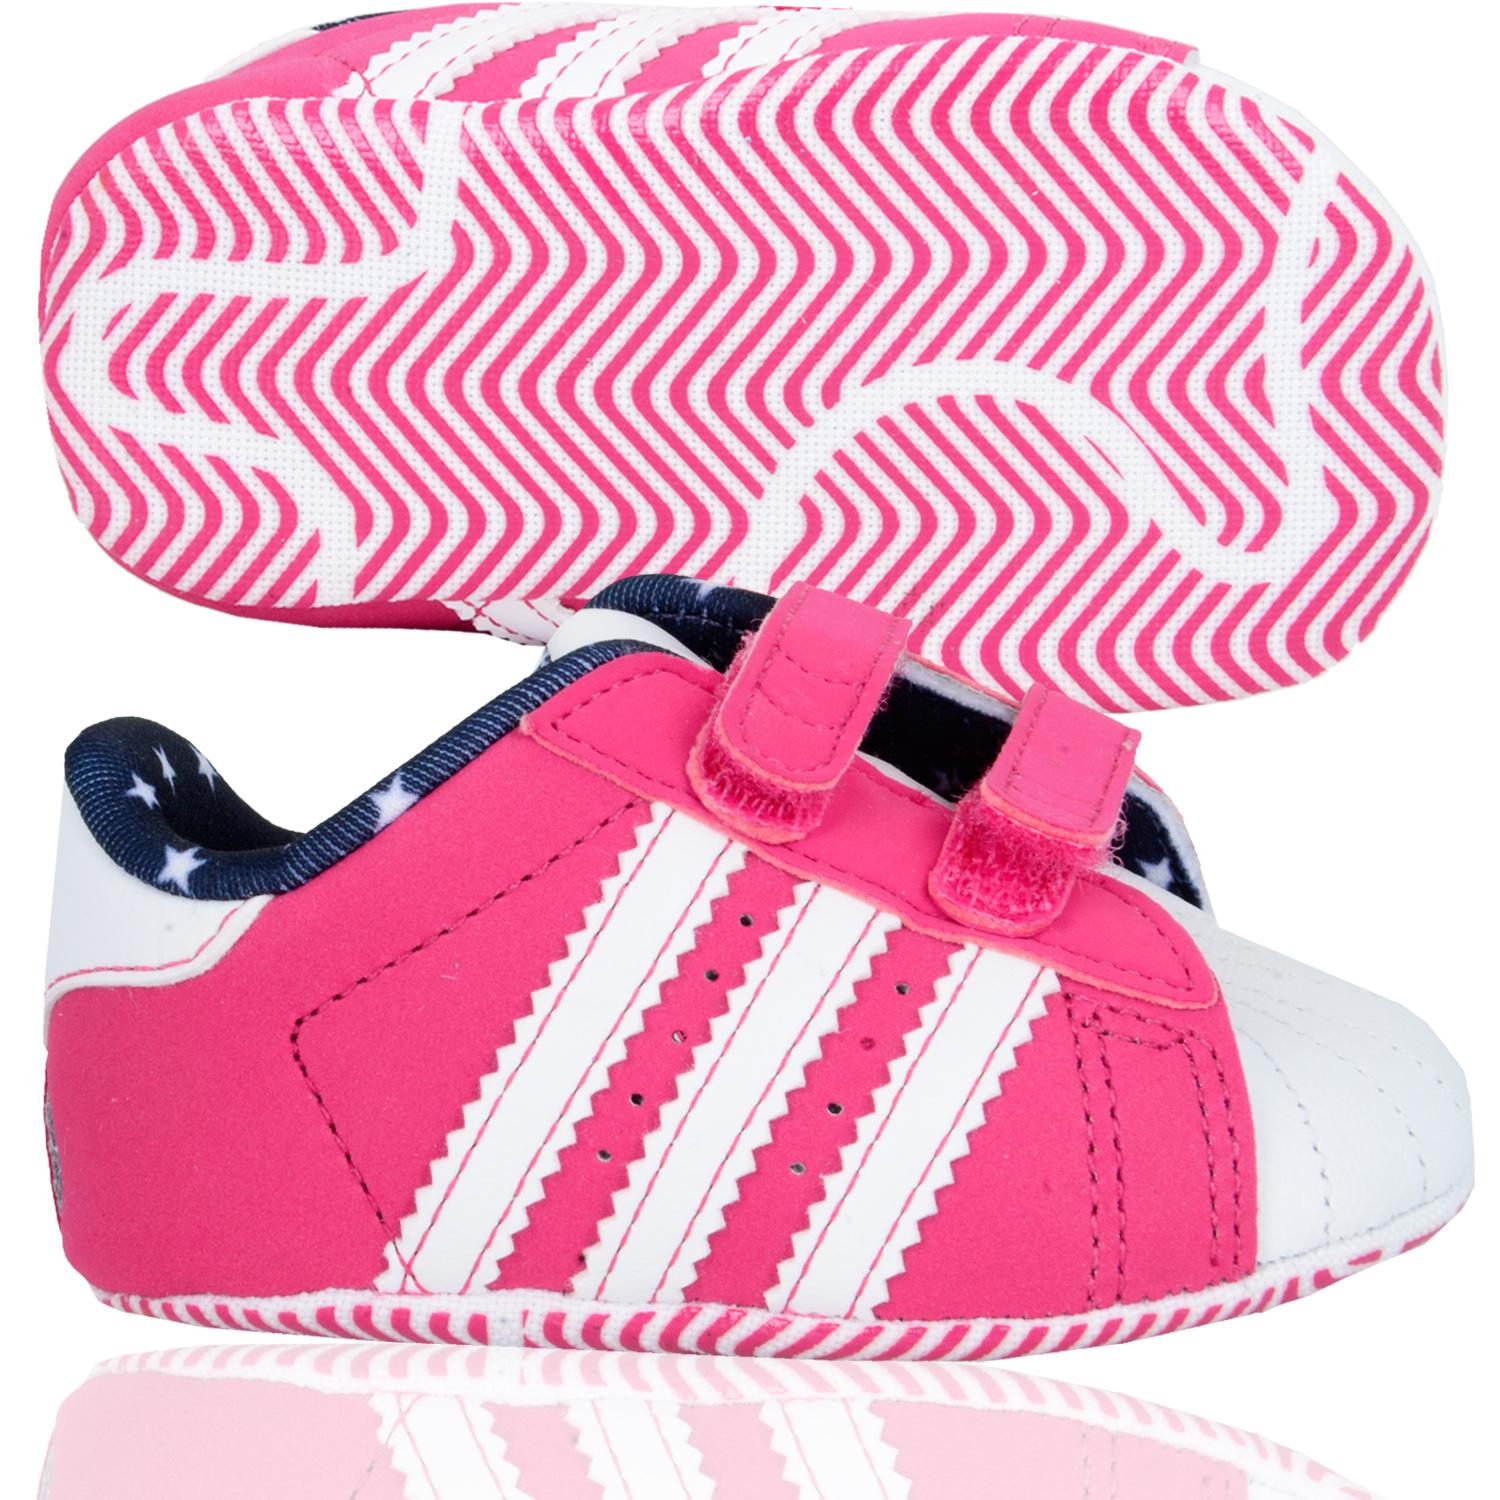 Foto Adidas Kids Shoe Superstar 2 Crib Zapatos De Bebé Rosa Blanco foto 741850